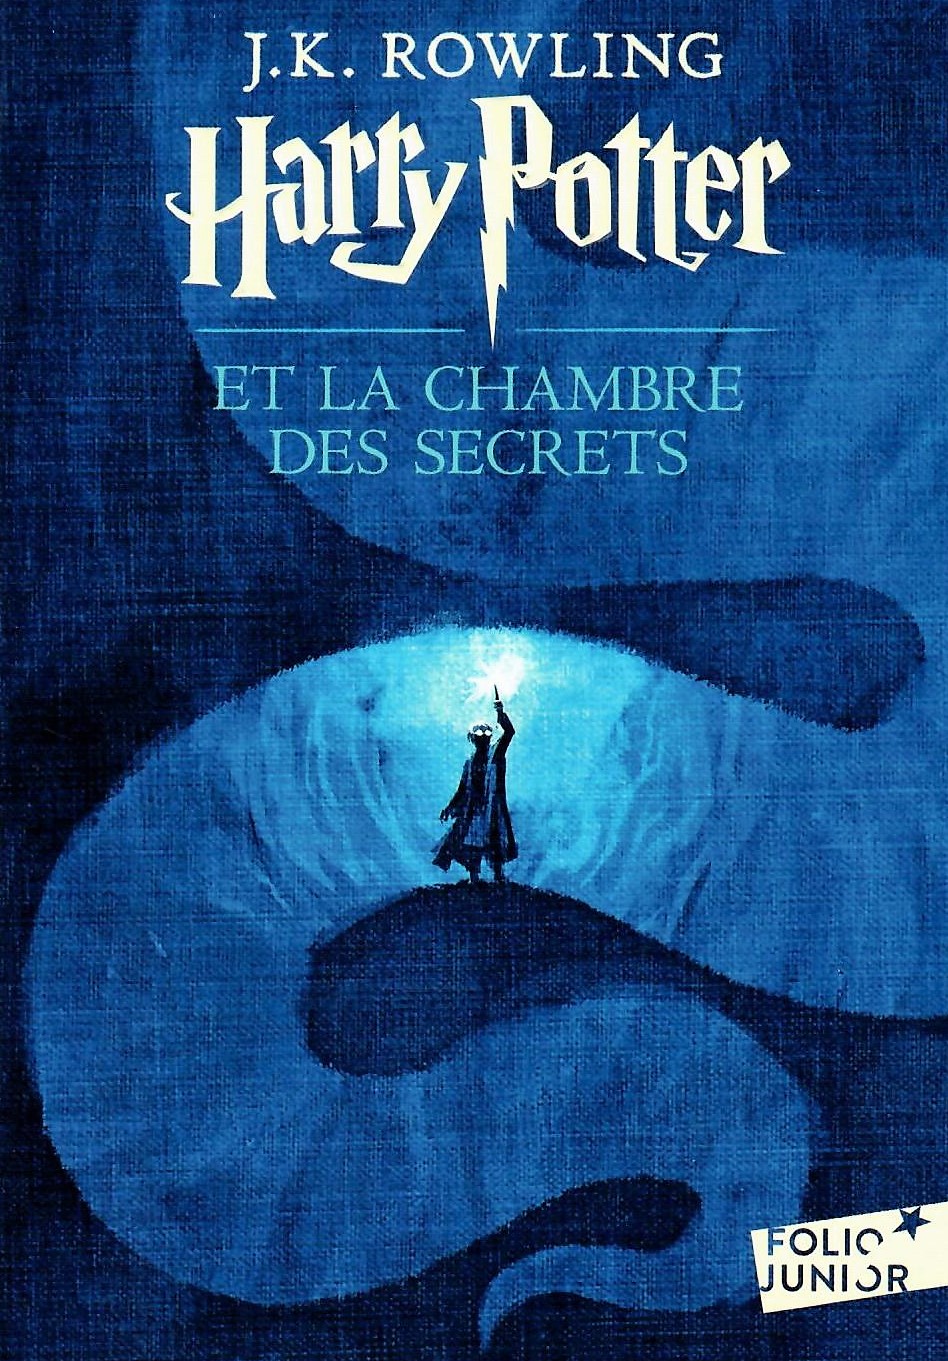 Harry Potter et la Chambre des Secrets (2017) / Тайная комната